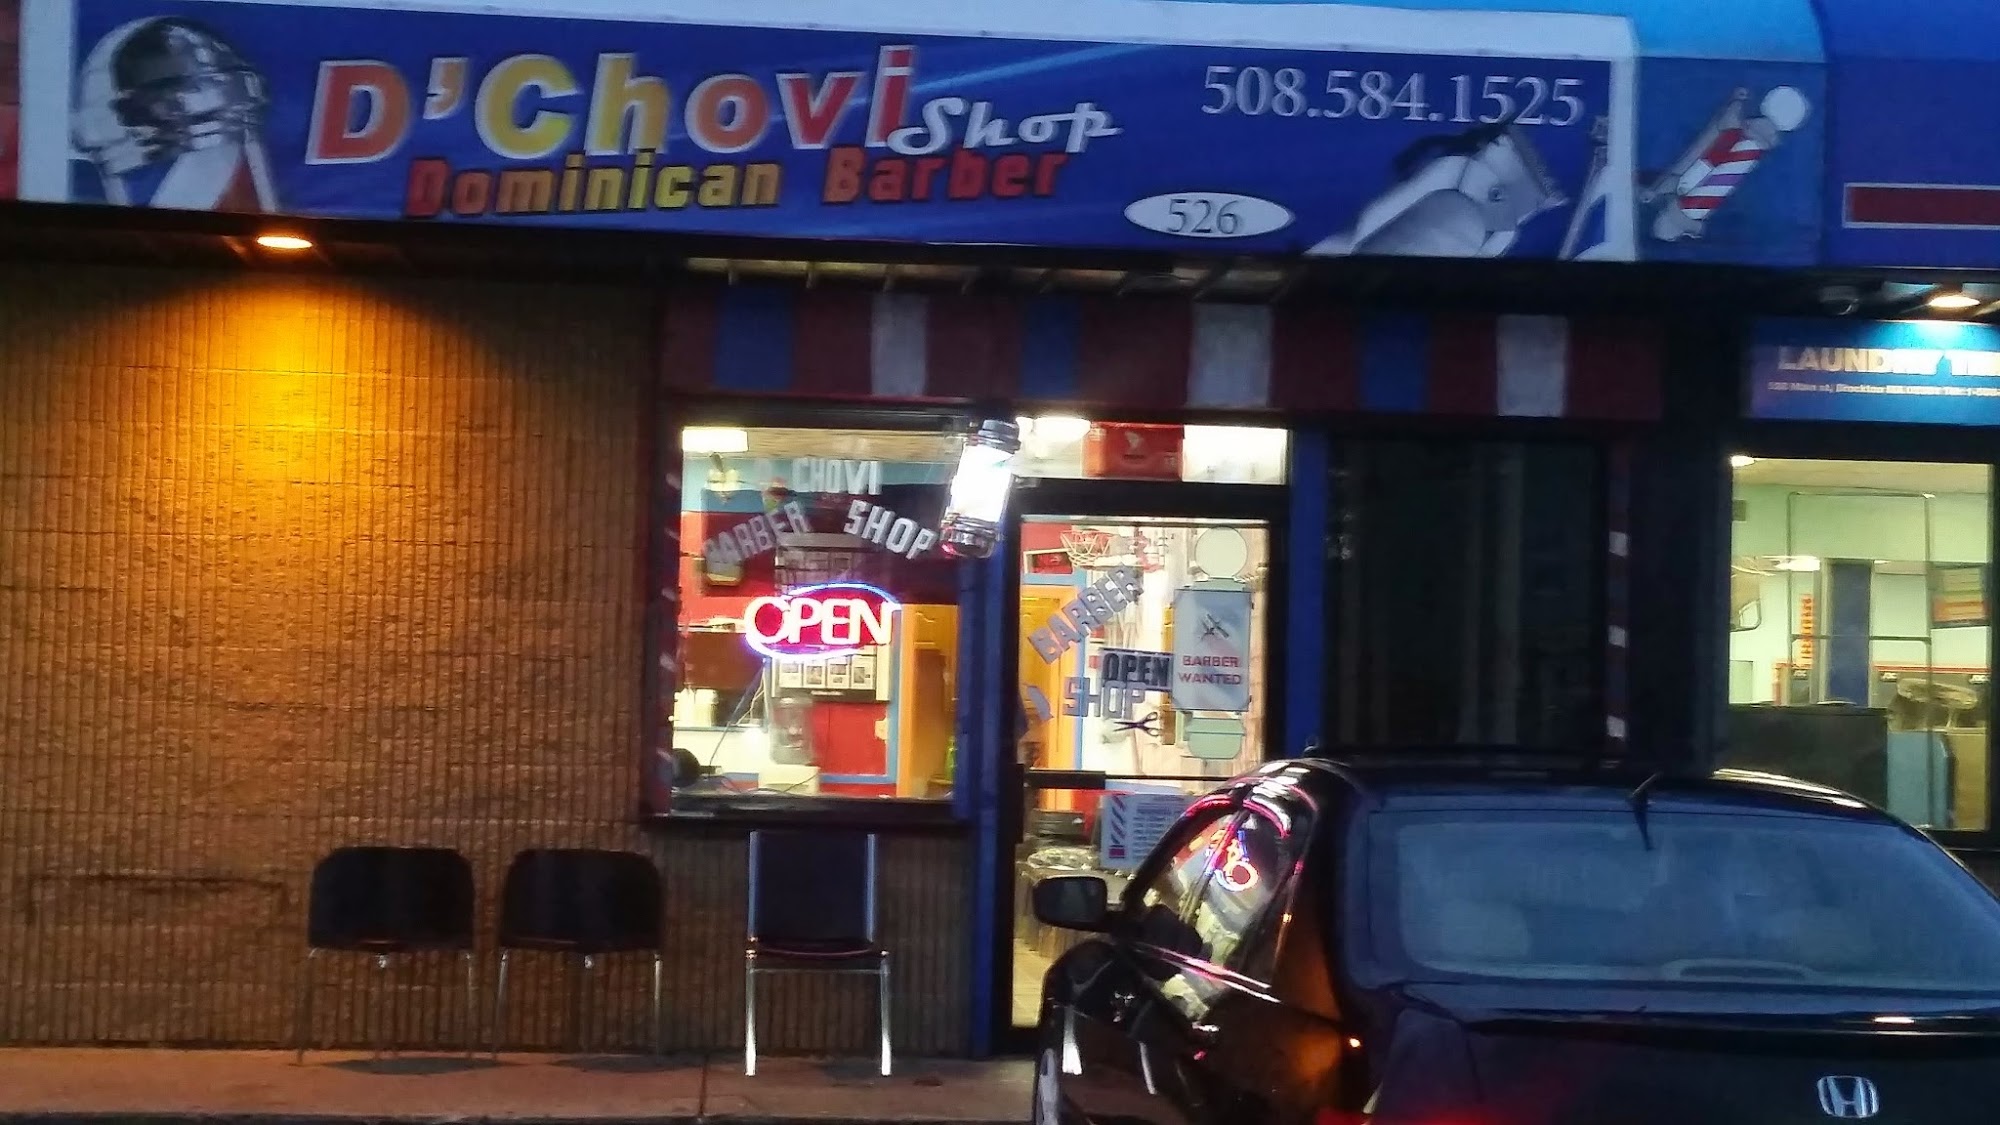 D' Chovi Dominican Barber Shop